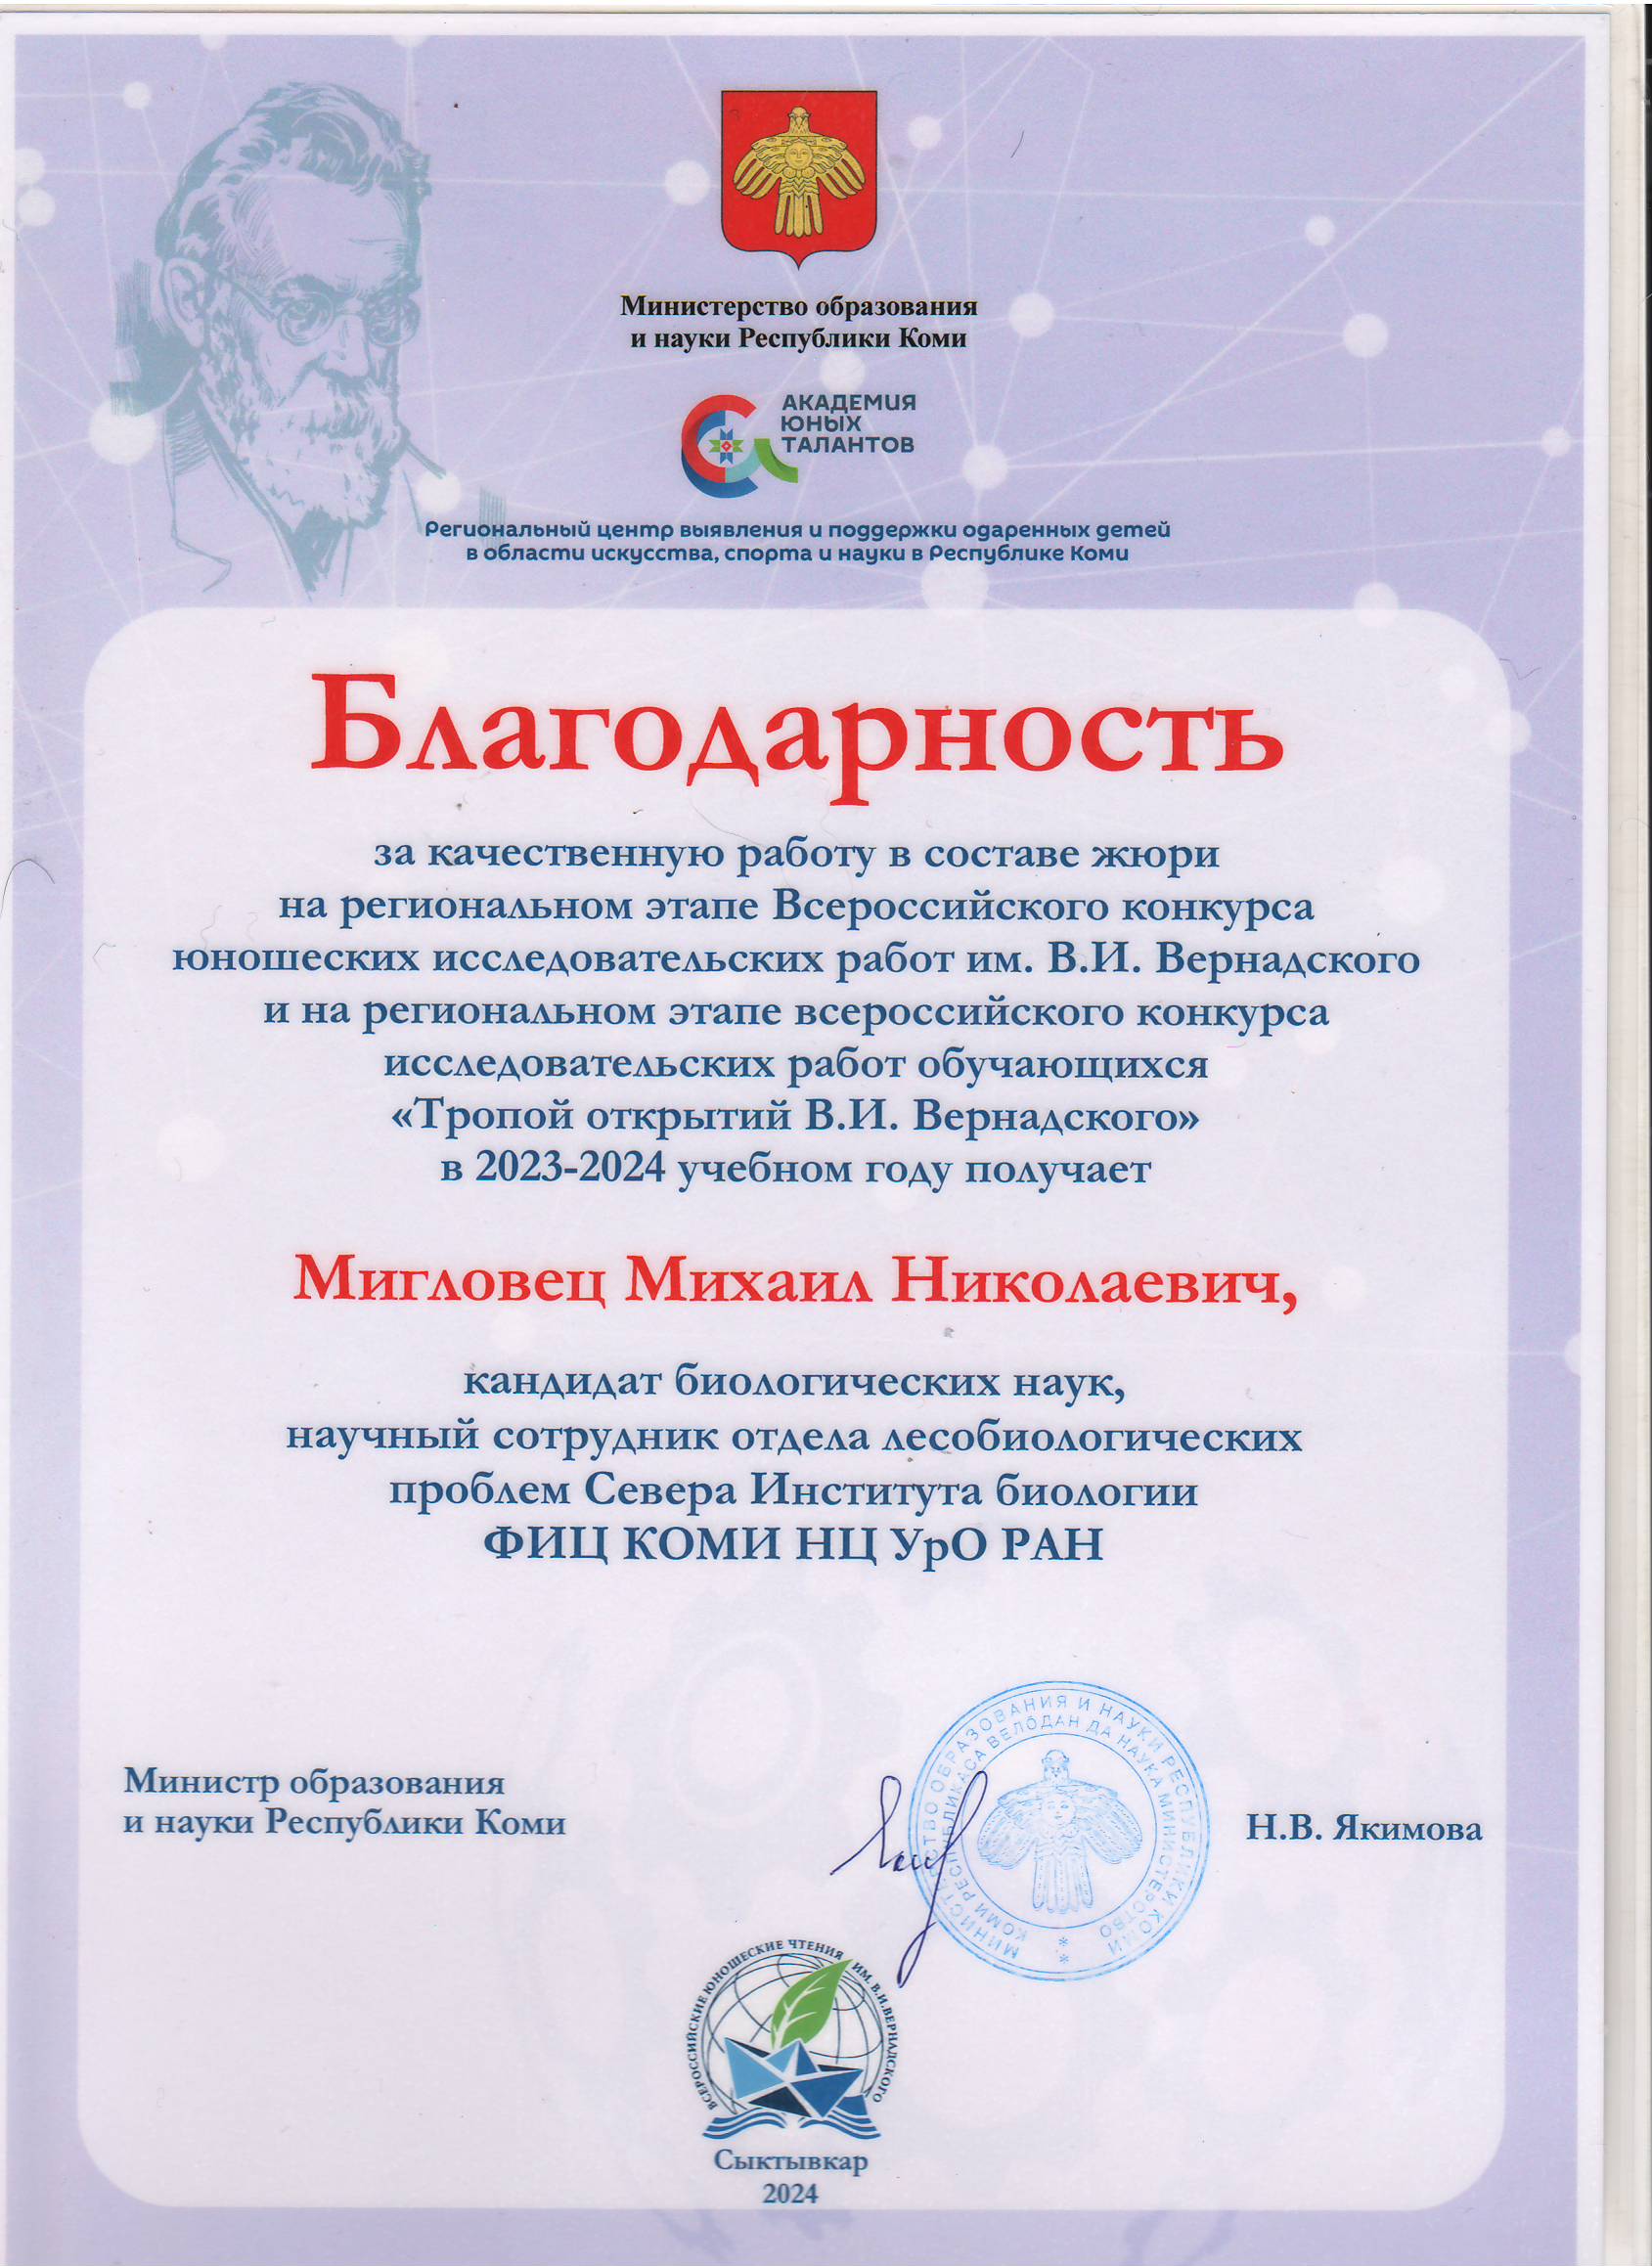 Благодарность Мигловцу Михаилу Николаевичу от Министерства образования и науки Республики Коми